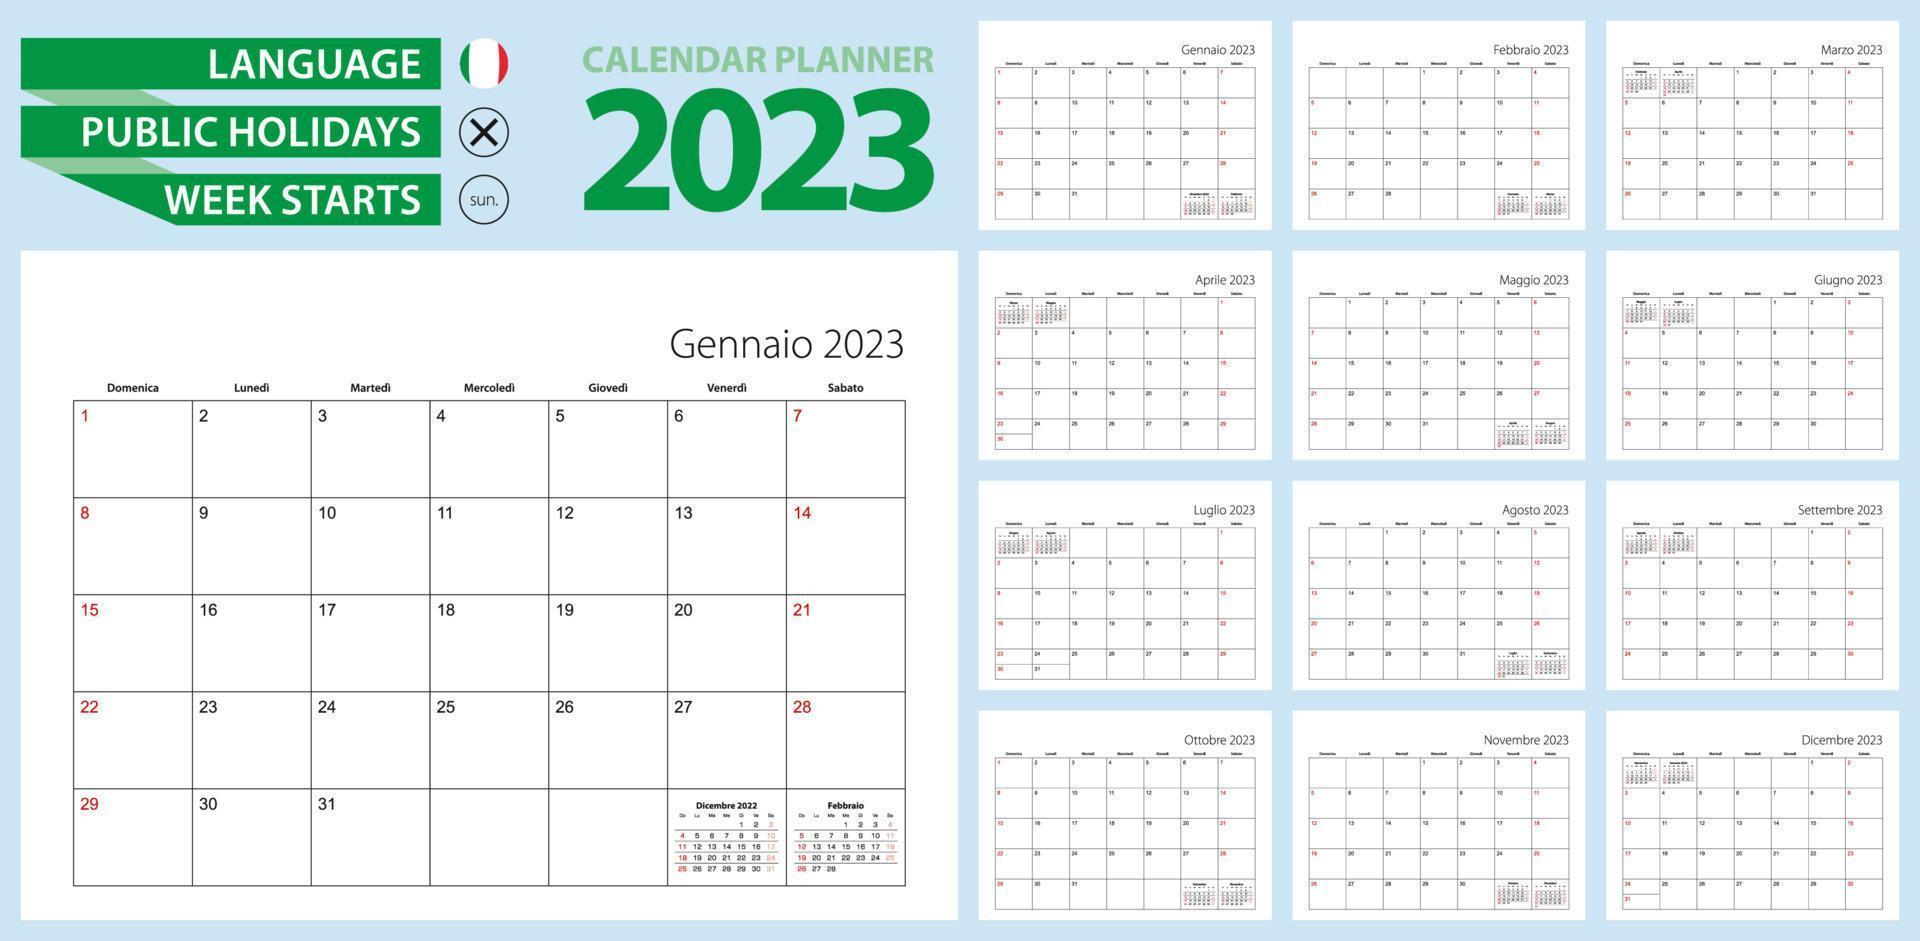 italiensk kalender planerare för 2023. italiensk språk, vecka börjar från söndag. vektor